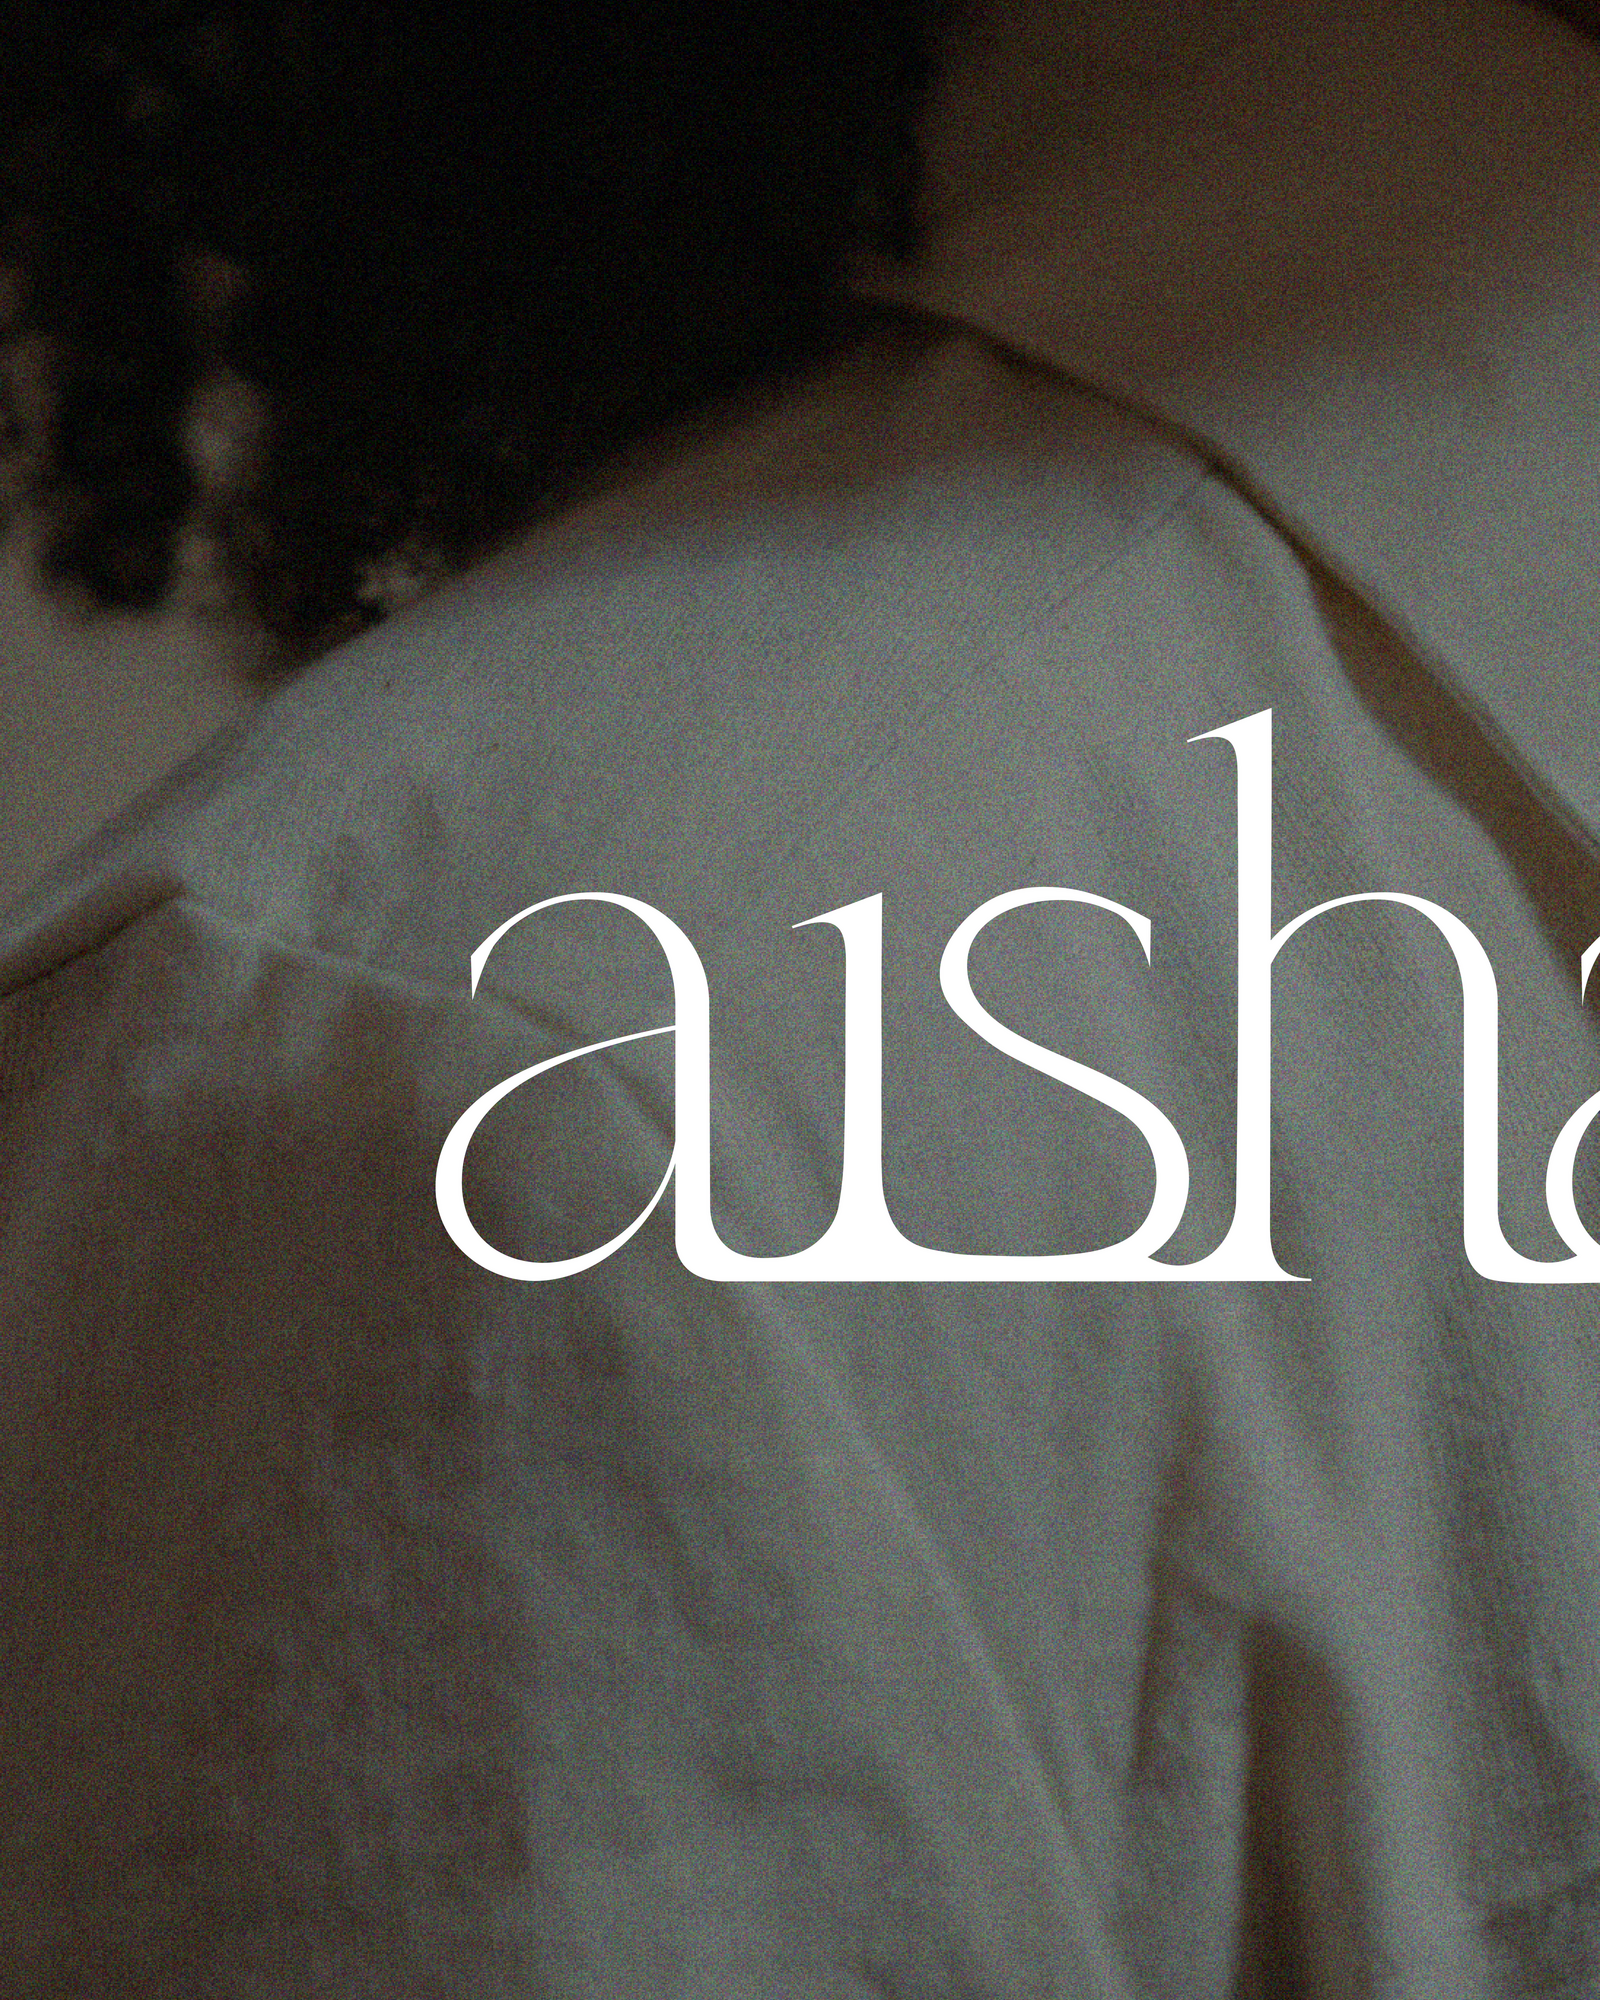 AISHA 2.05